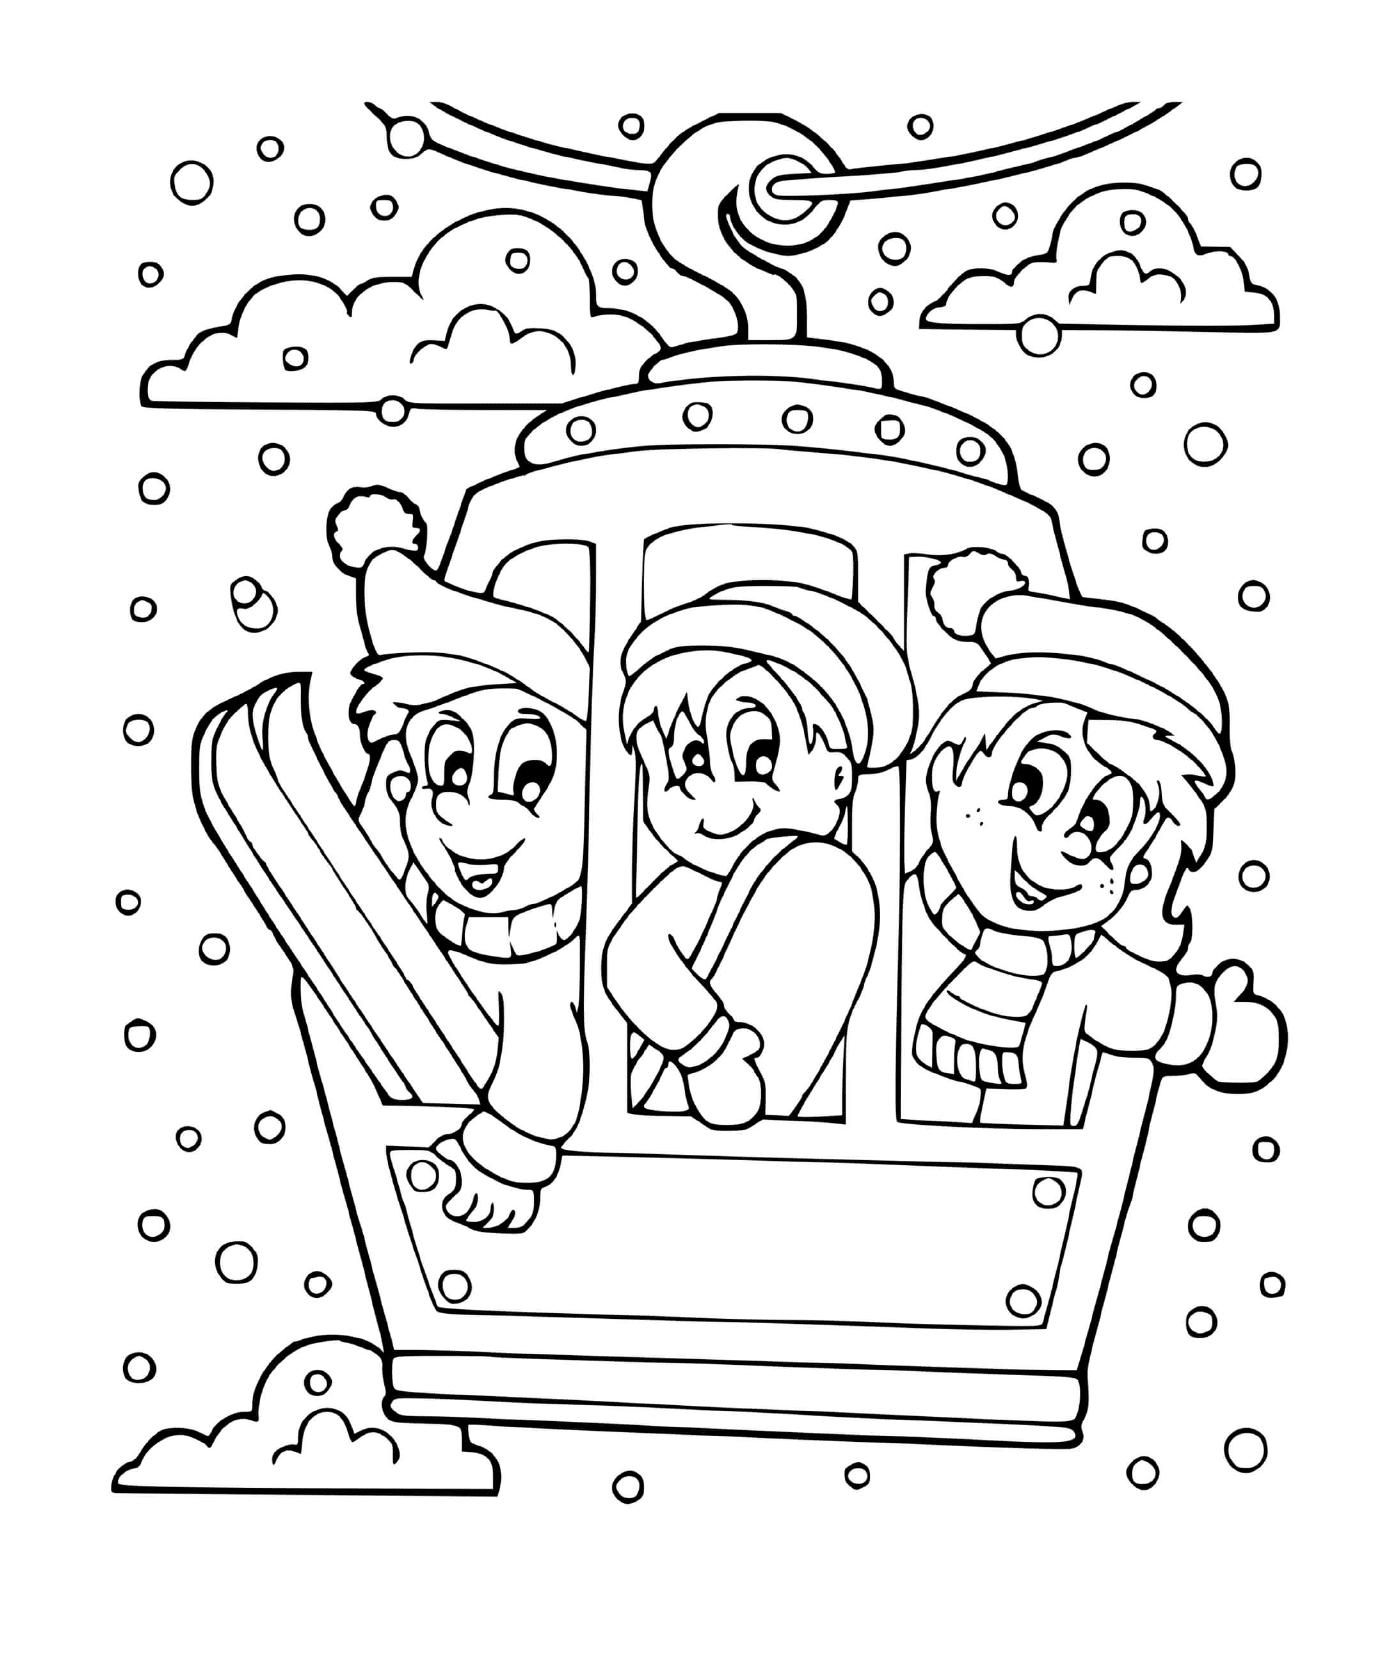  Freunde spielen einen Wintersport 